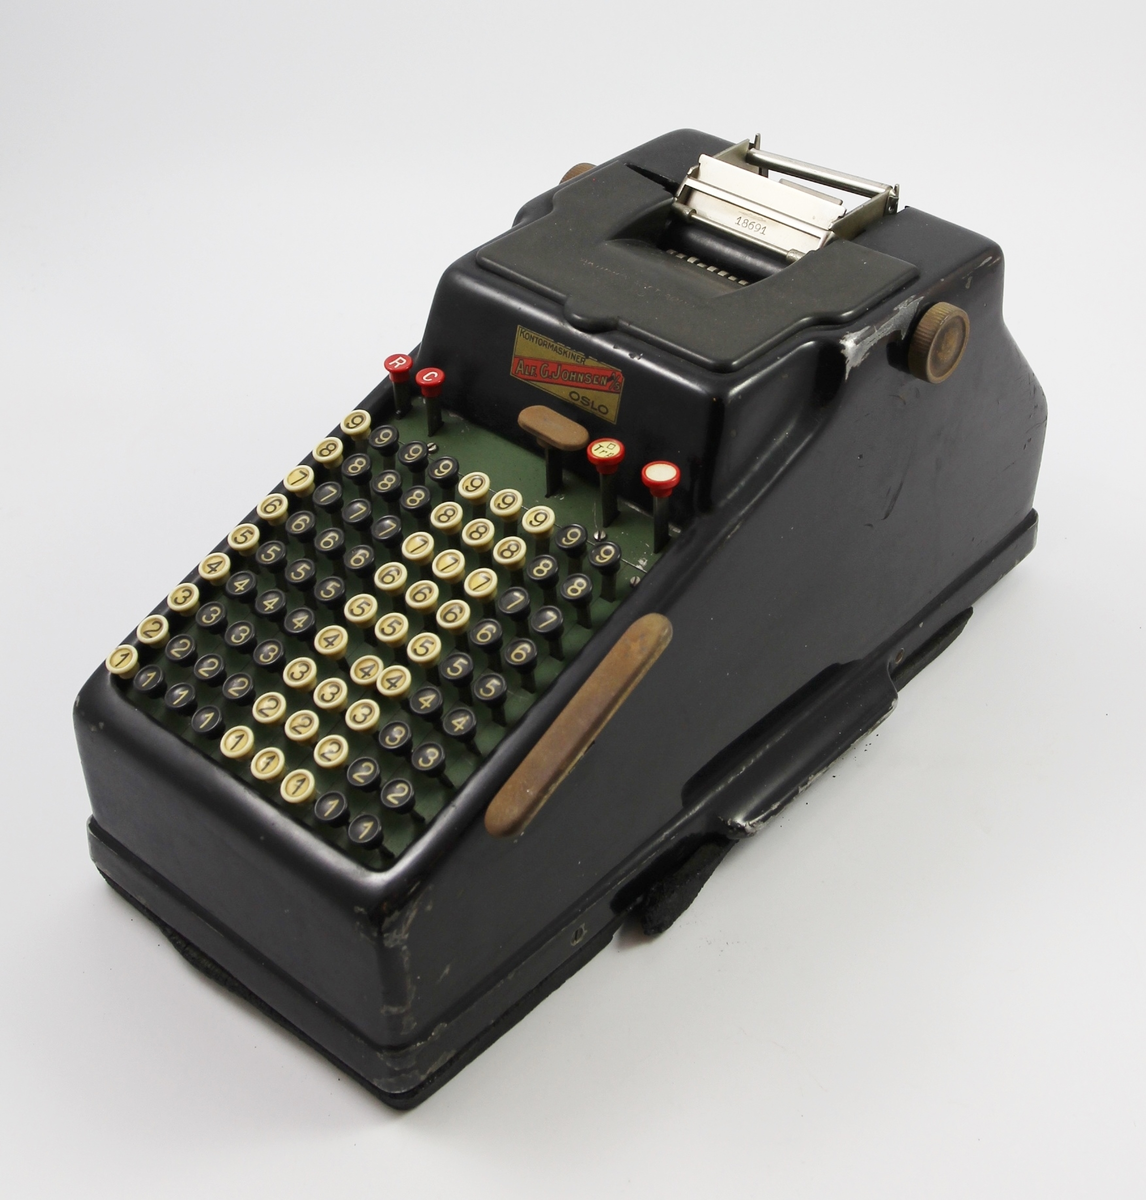 Sort skrivemaskin, kun med tall. Rektangulær from med svakt skrånet tastatur mot en av kortsidene.